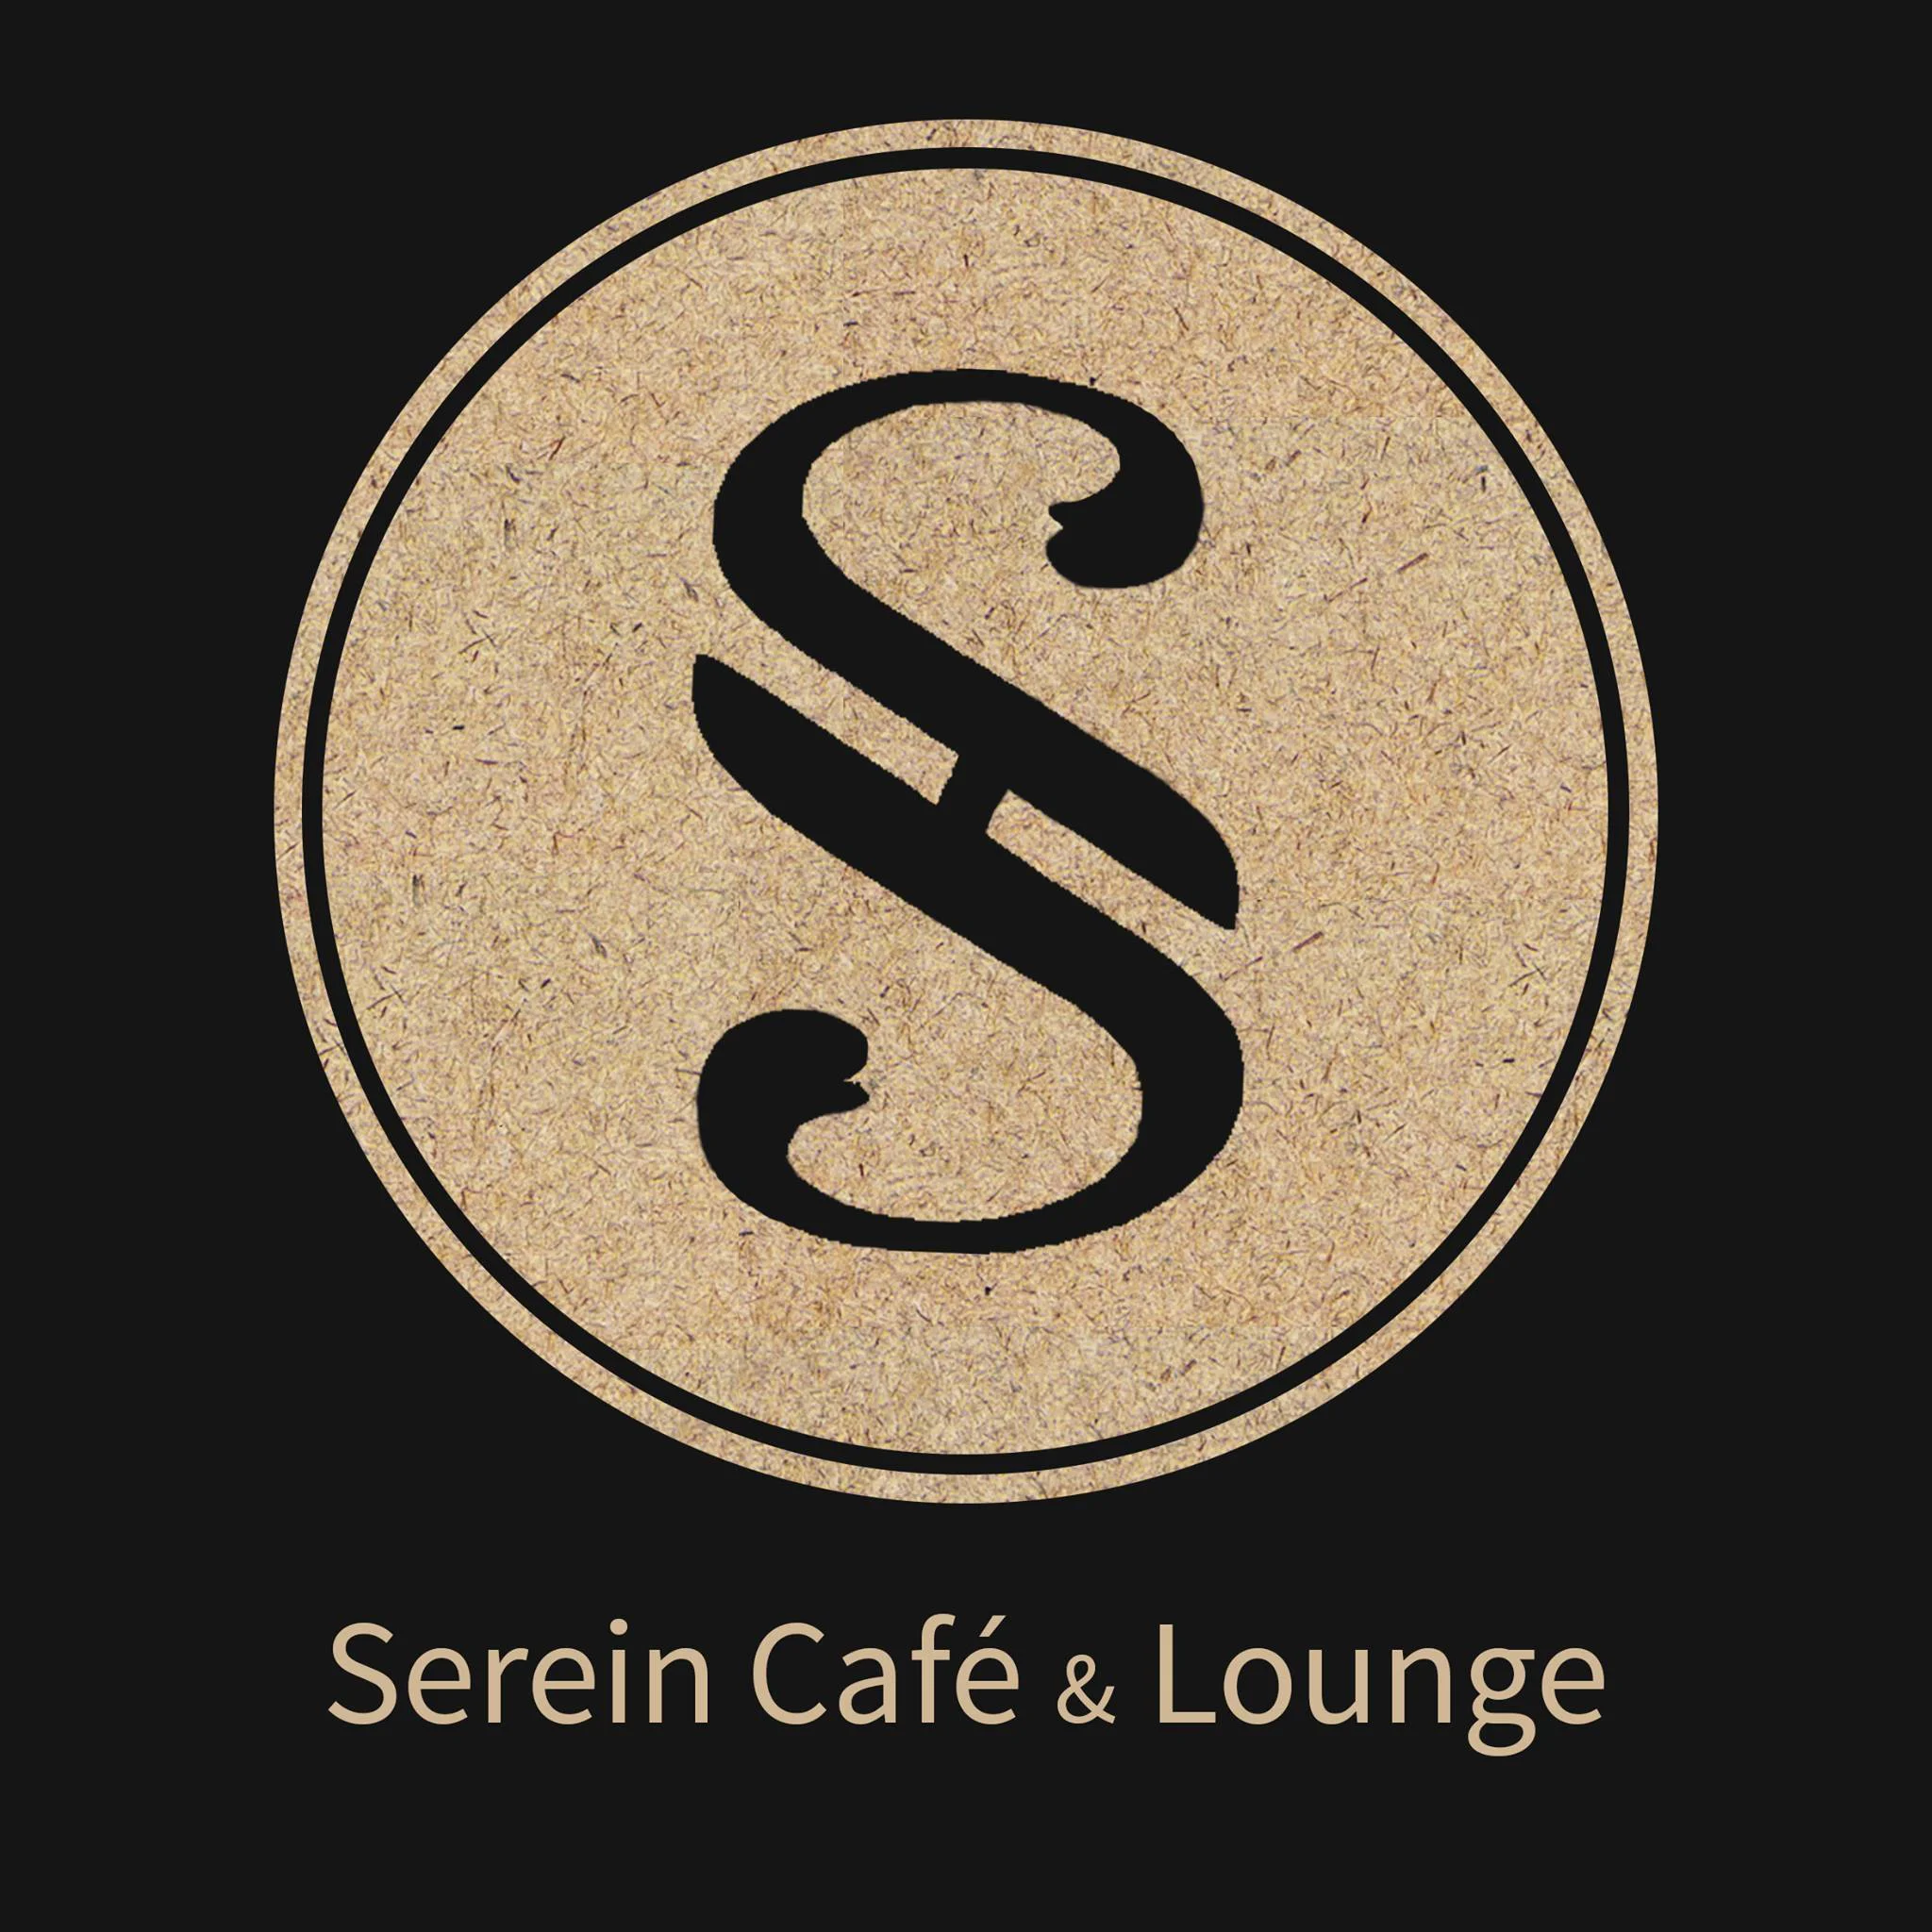 Serein Cafe